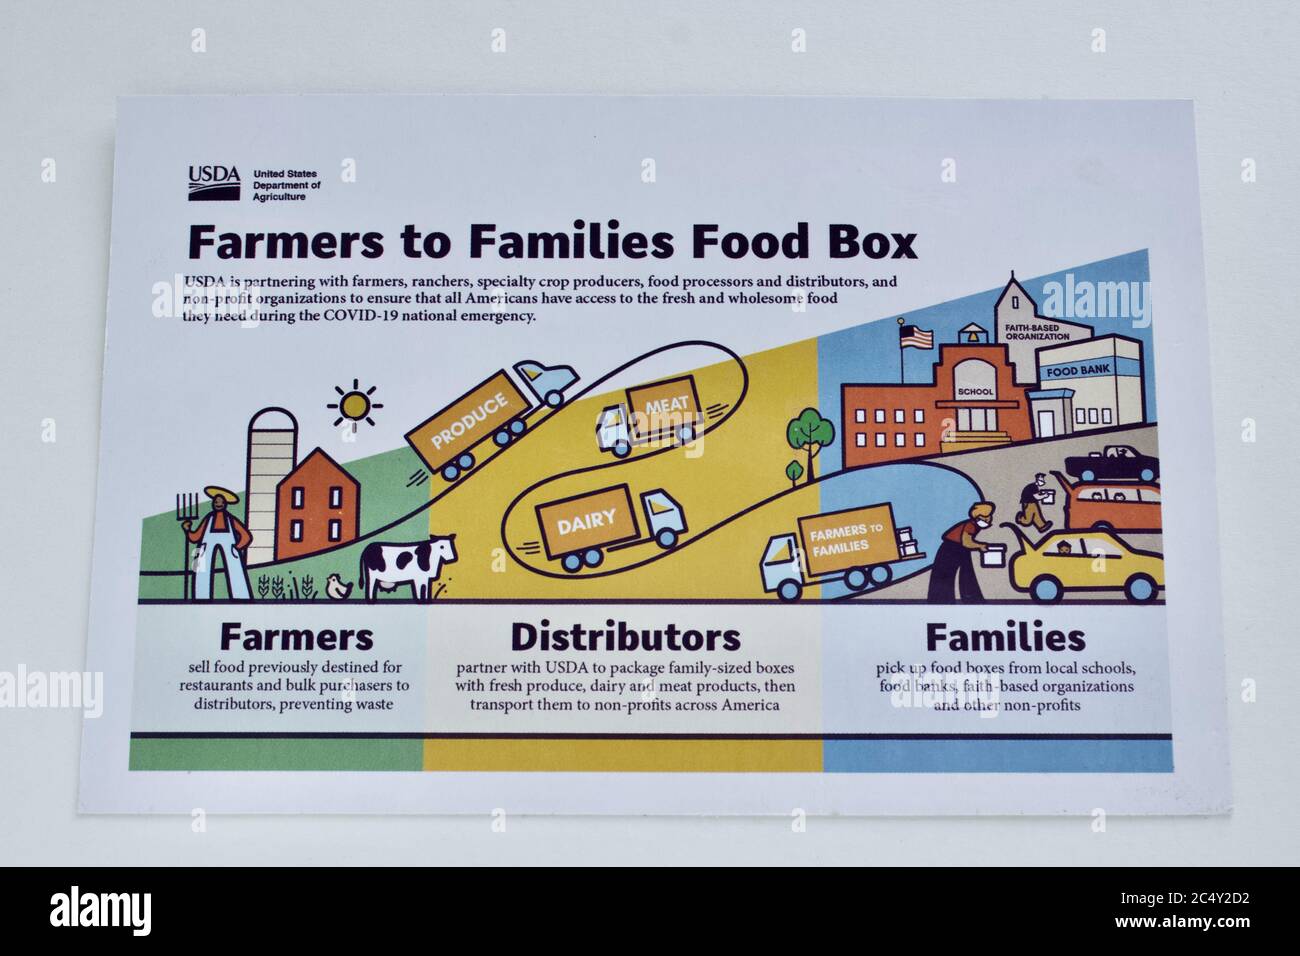 Miami, FL 6/27/2020-USDA Bauern zu Familien Food Box Karte in jeder Lebensmittel-Box eingeschlossen. Bis heute wurden 20 Millionen Kisten Lebensmittel geliefert. Stockfoto